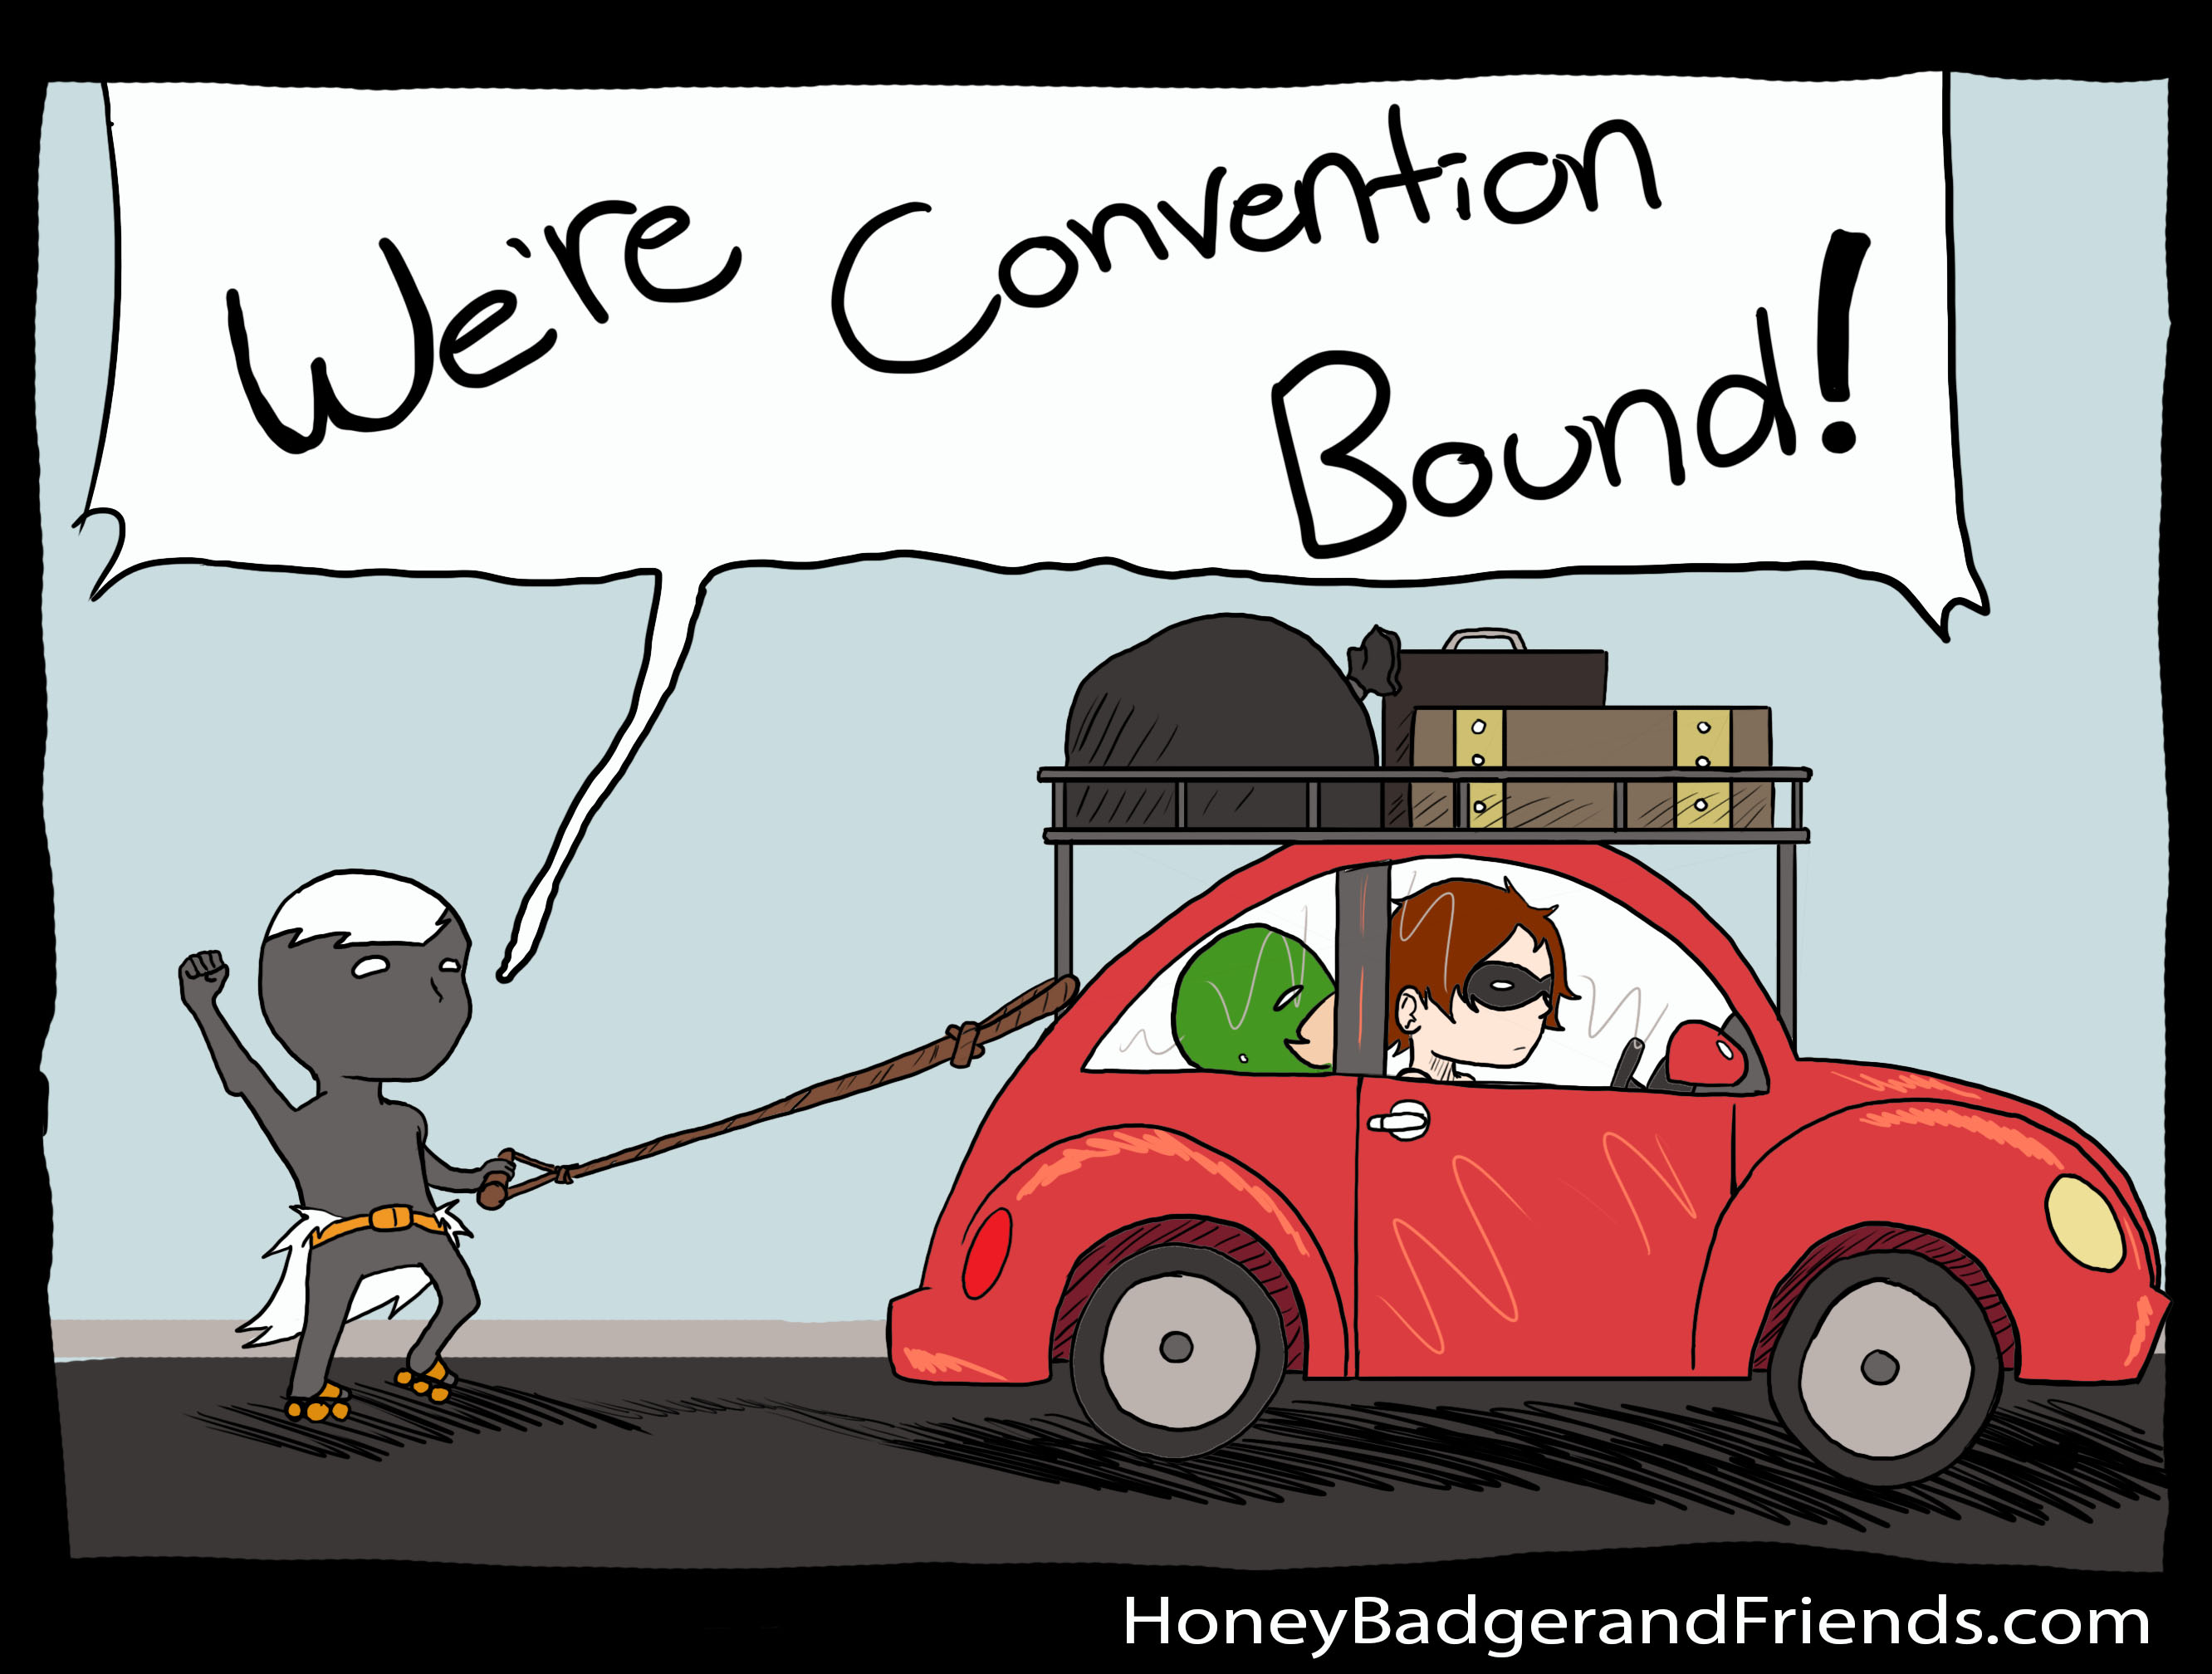 Convention bound